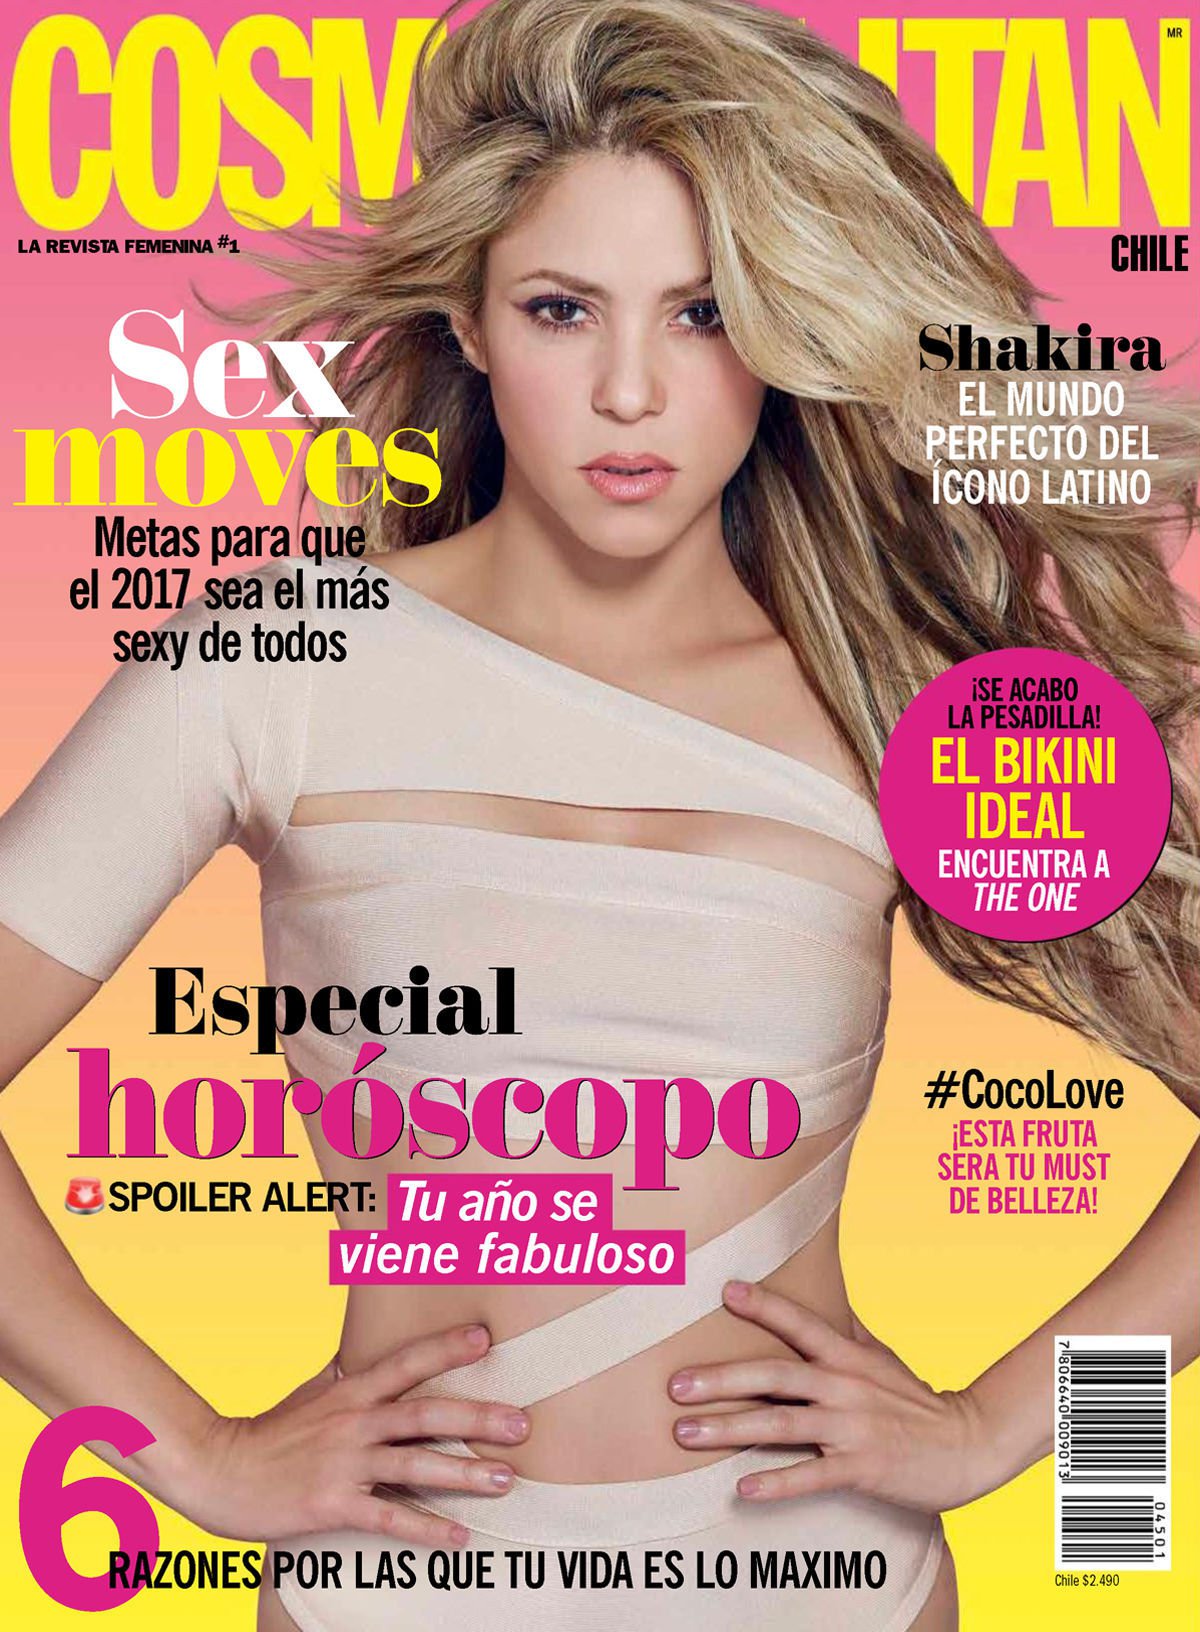 Shakira Sexy Photos #79614880